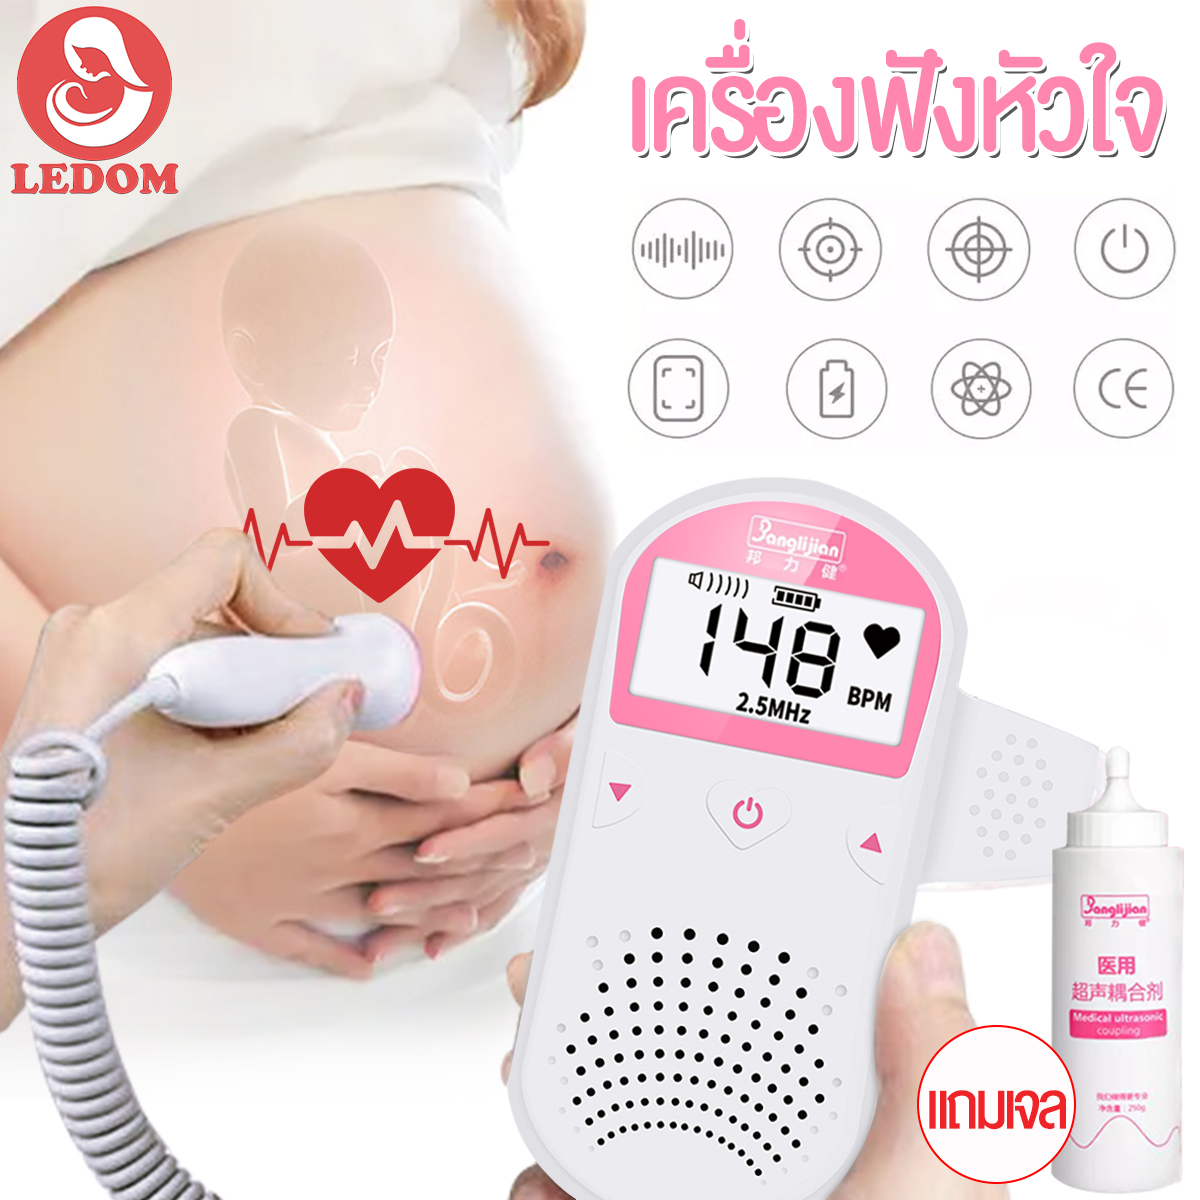 LEDOM เครื่องฟังท้อง Bailijian เครื่องฟังทารกพร้อมเจล เบบี้มอนิเตอร์ เครื่องฟังเสียงหัวใจทารกในครรภ์ หน้าจอโค้ง ใช้ง่าย มีรับประกัน